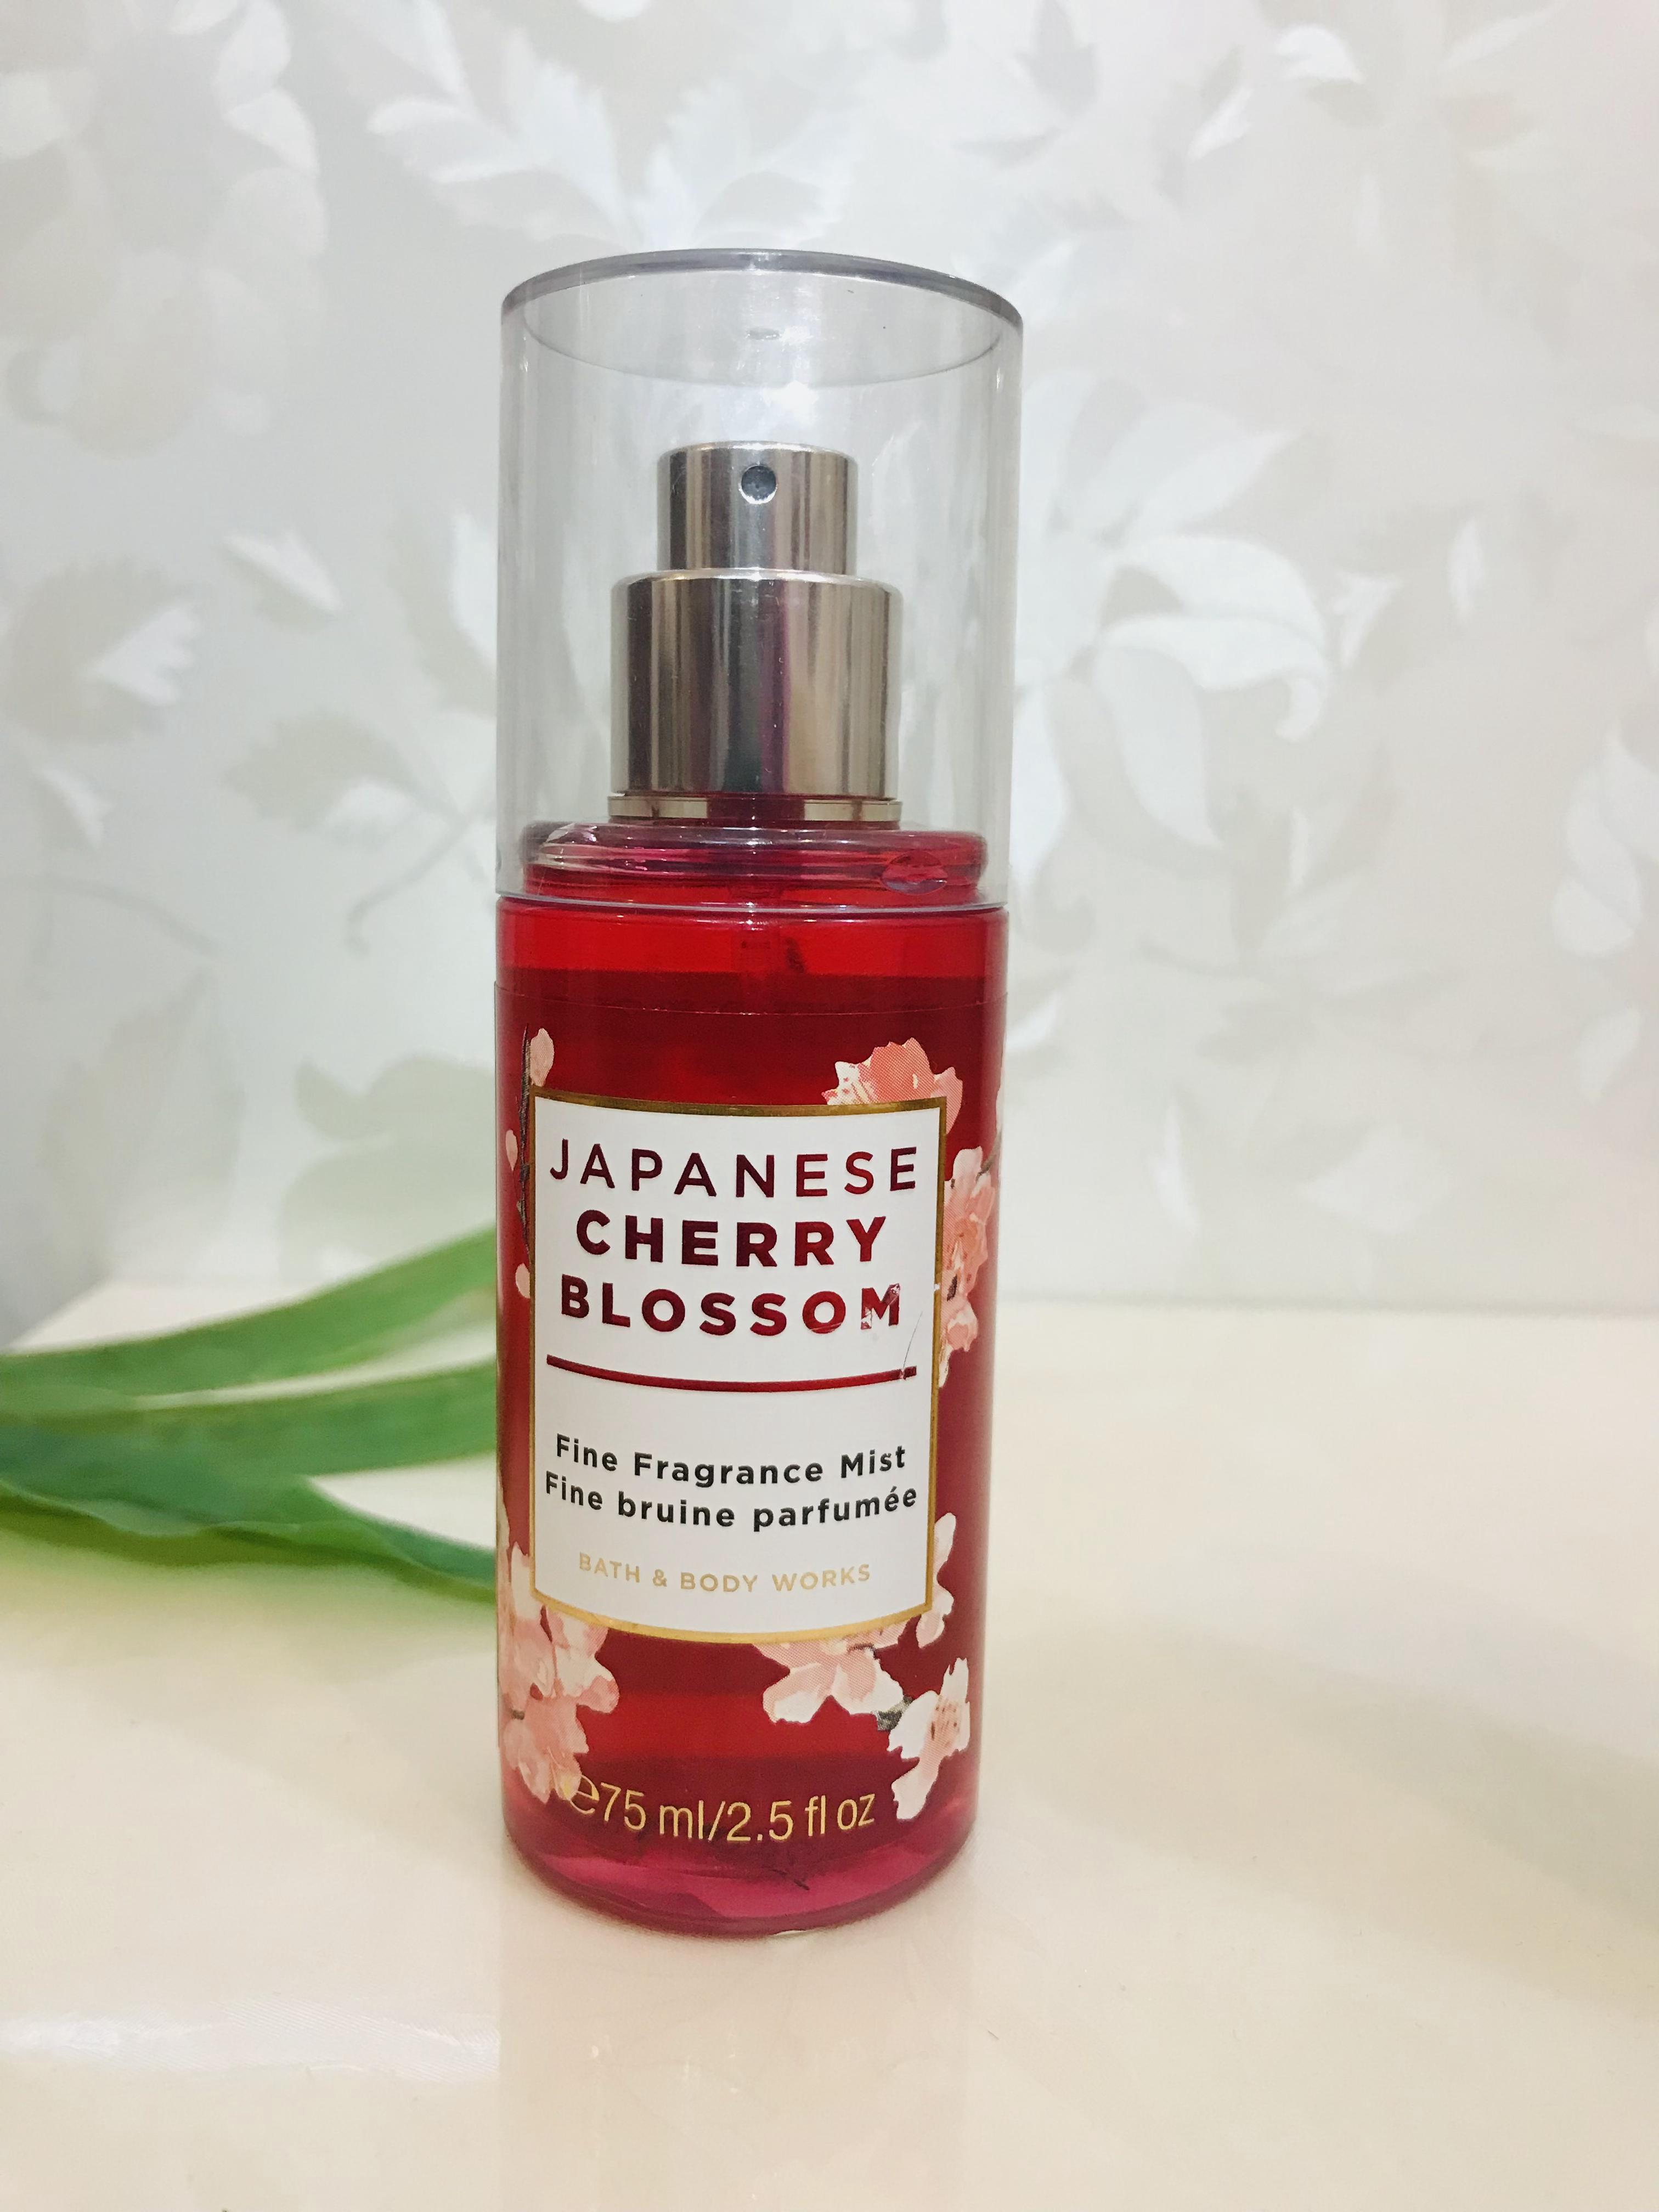 بادی میست خوشبو کننده بدن Bath&Body اورجینال(USA) رایحه شکوفه های گیلاس ژاپنی کد 800797